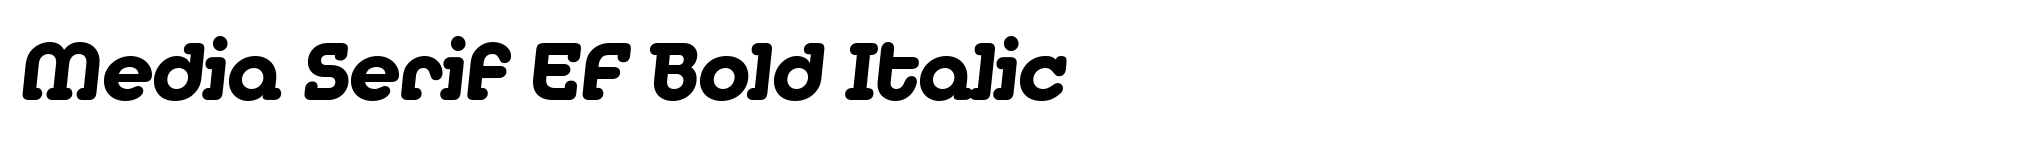 Media Serif EF Bold Italic image